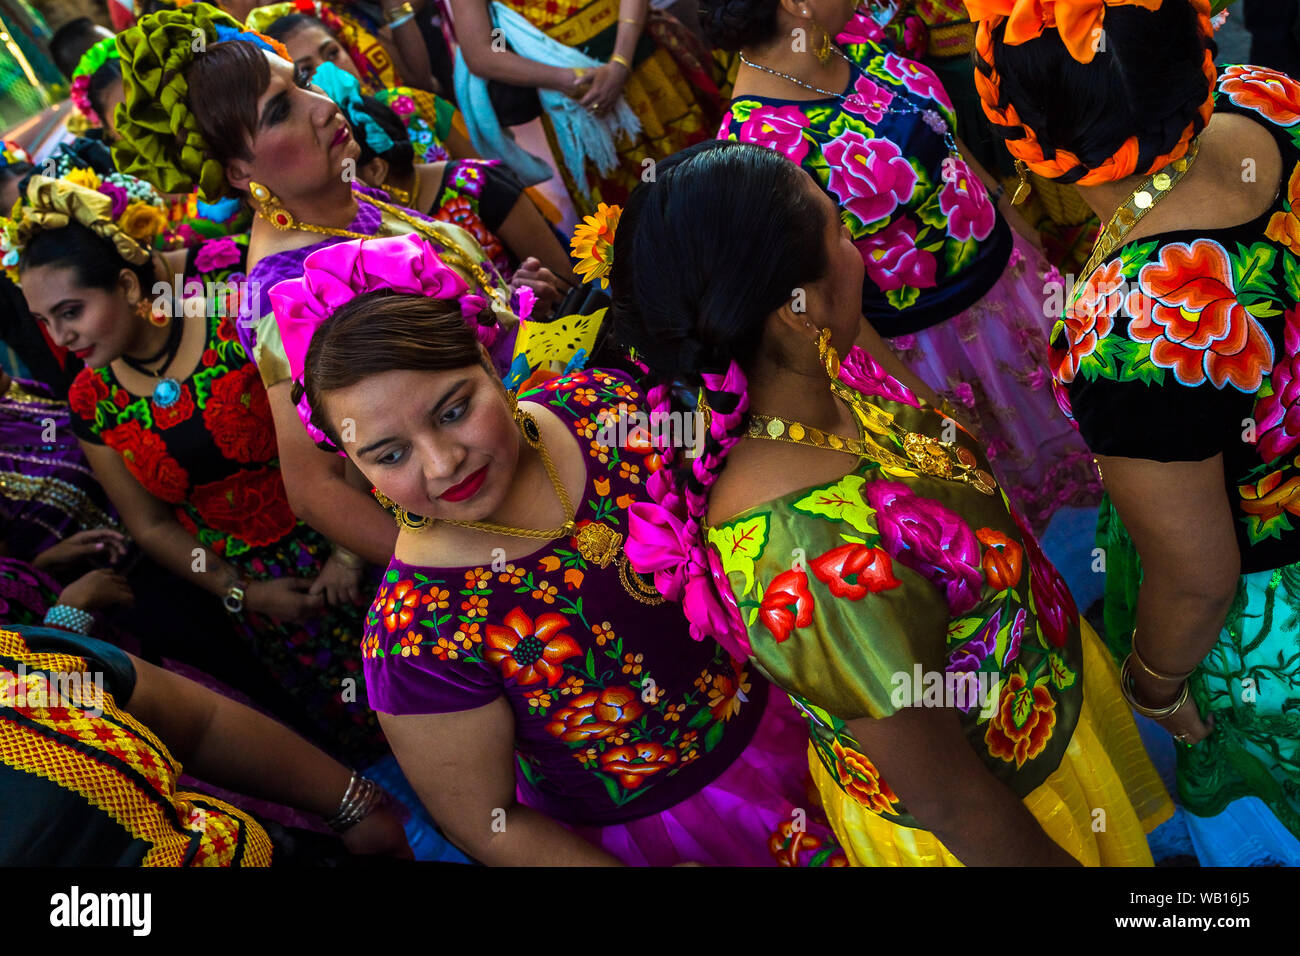 La femme mexicaine d'origine zapotèque, vêtu du costume traditionnel robe Tehuana, participer au festival de Juchitán de Zaragoza, Mexique. Banque D'Images